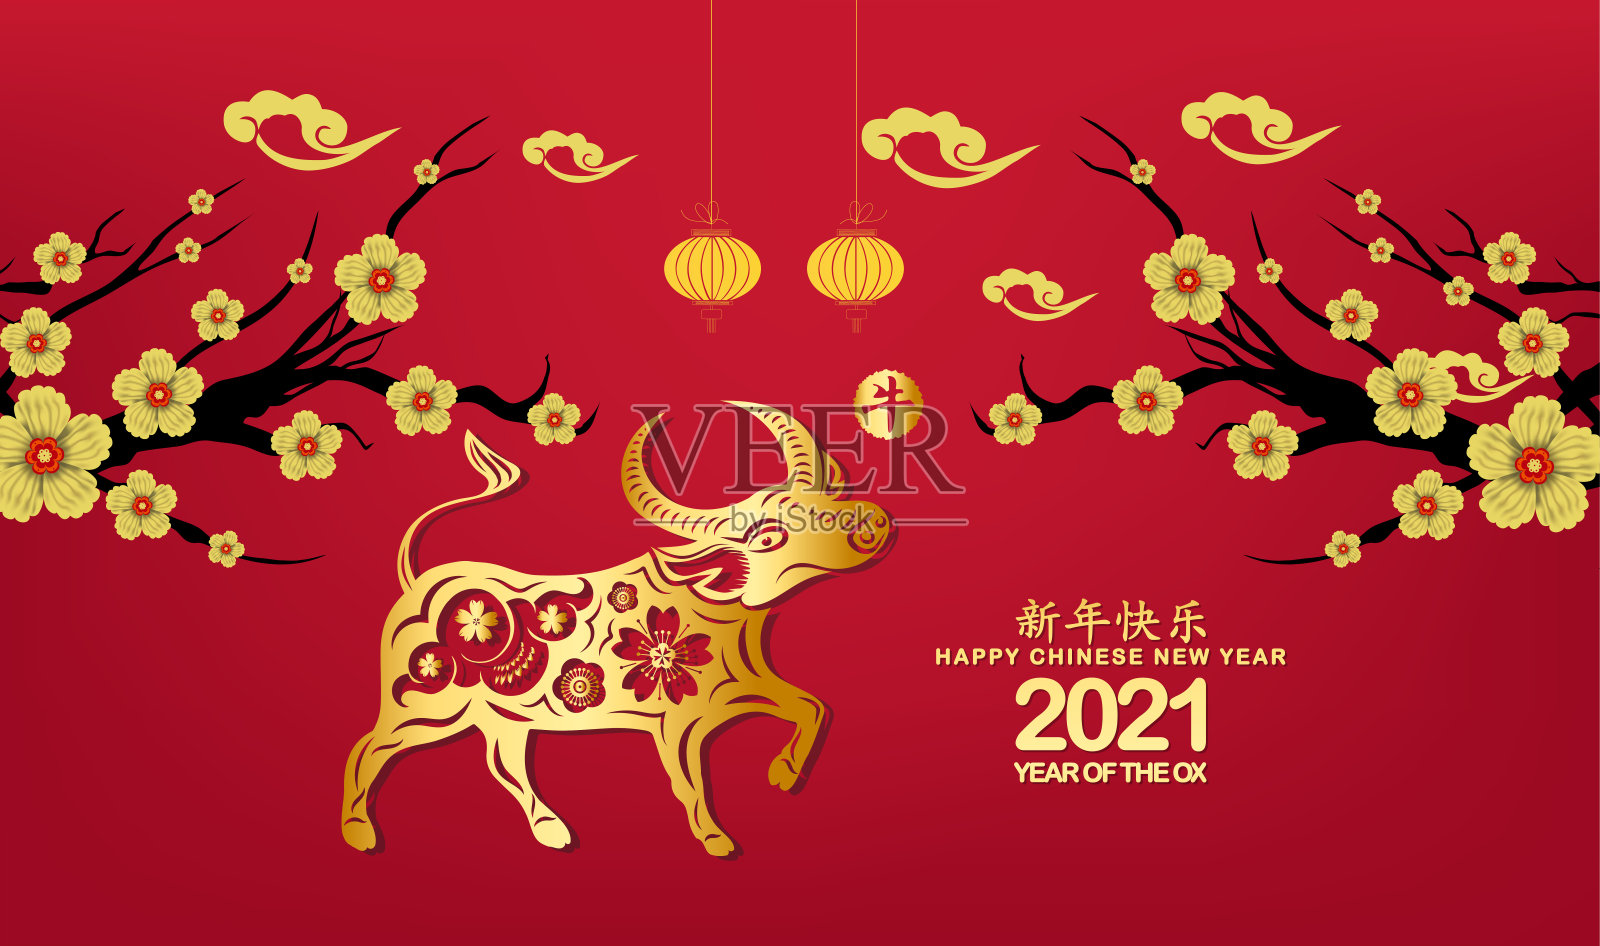 新春快乐牛年剪纸风格。贺卡上的生肖符号(中文翻译为“2021年牛年快乐”)插画图片素材